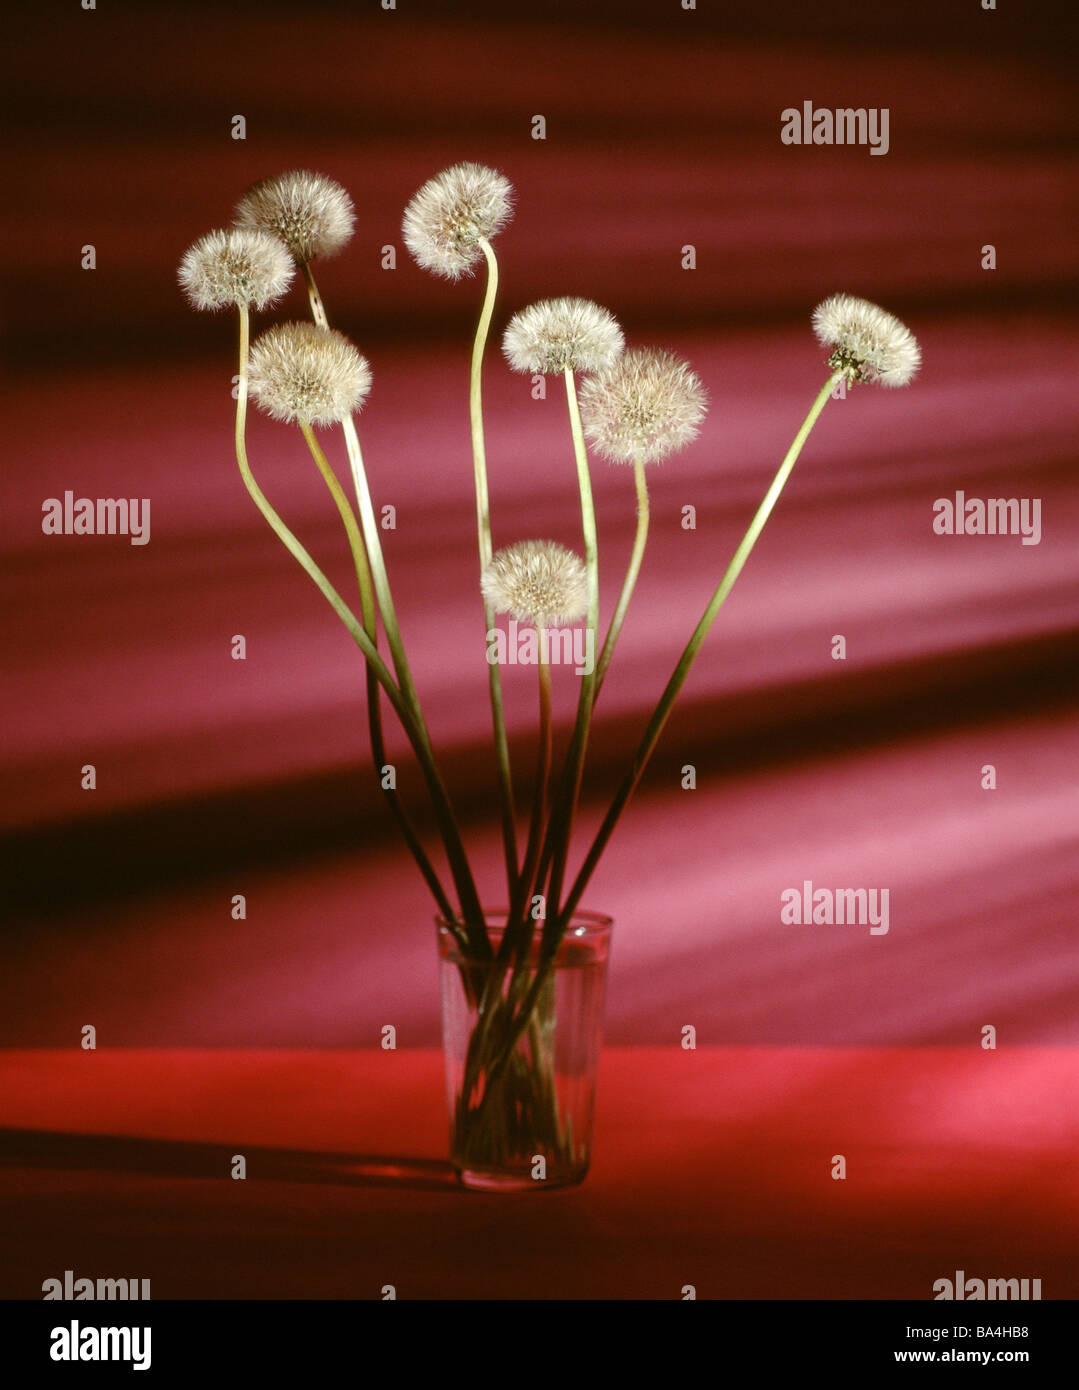 Tumbler Atem-Blumen Pflanzen Spiel-Pflanzen Wiesenblumen Composites Blumen  gepflückt Blüten weiß verblasst zart gefiederten Pappus Stockfotografie -  Alamy